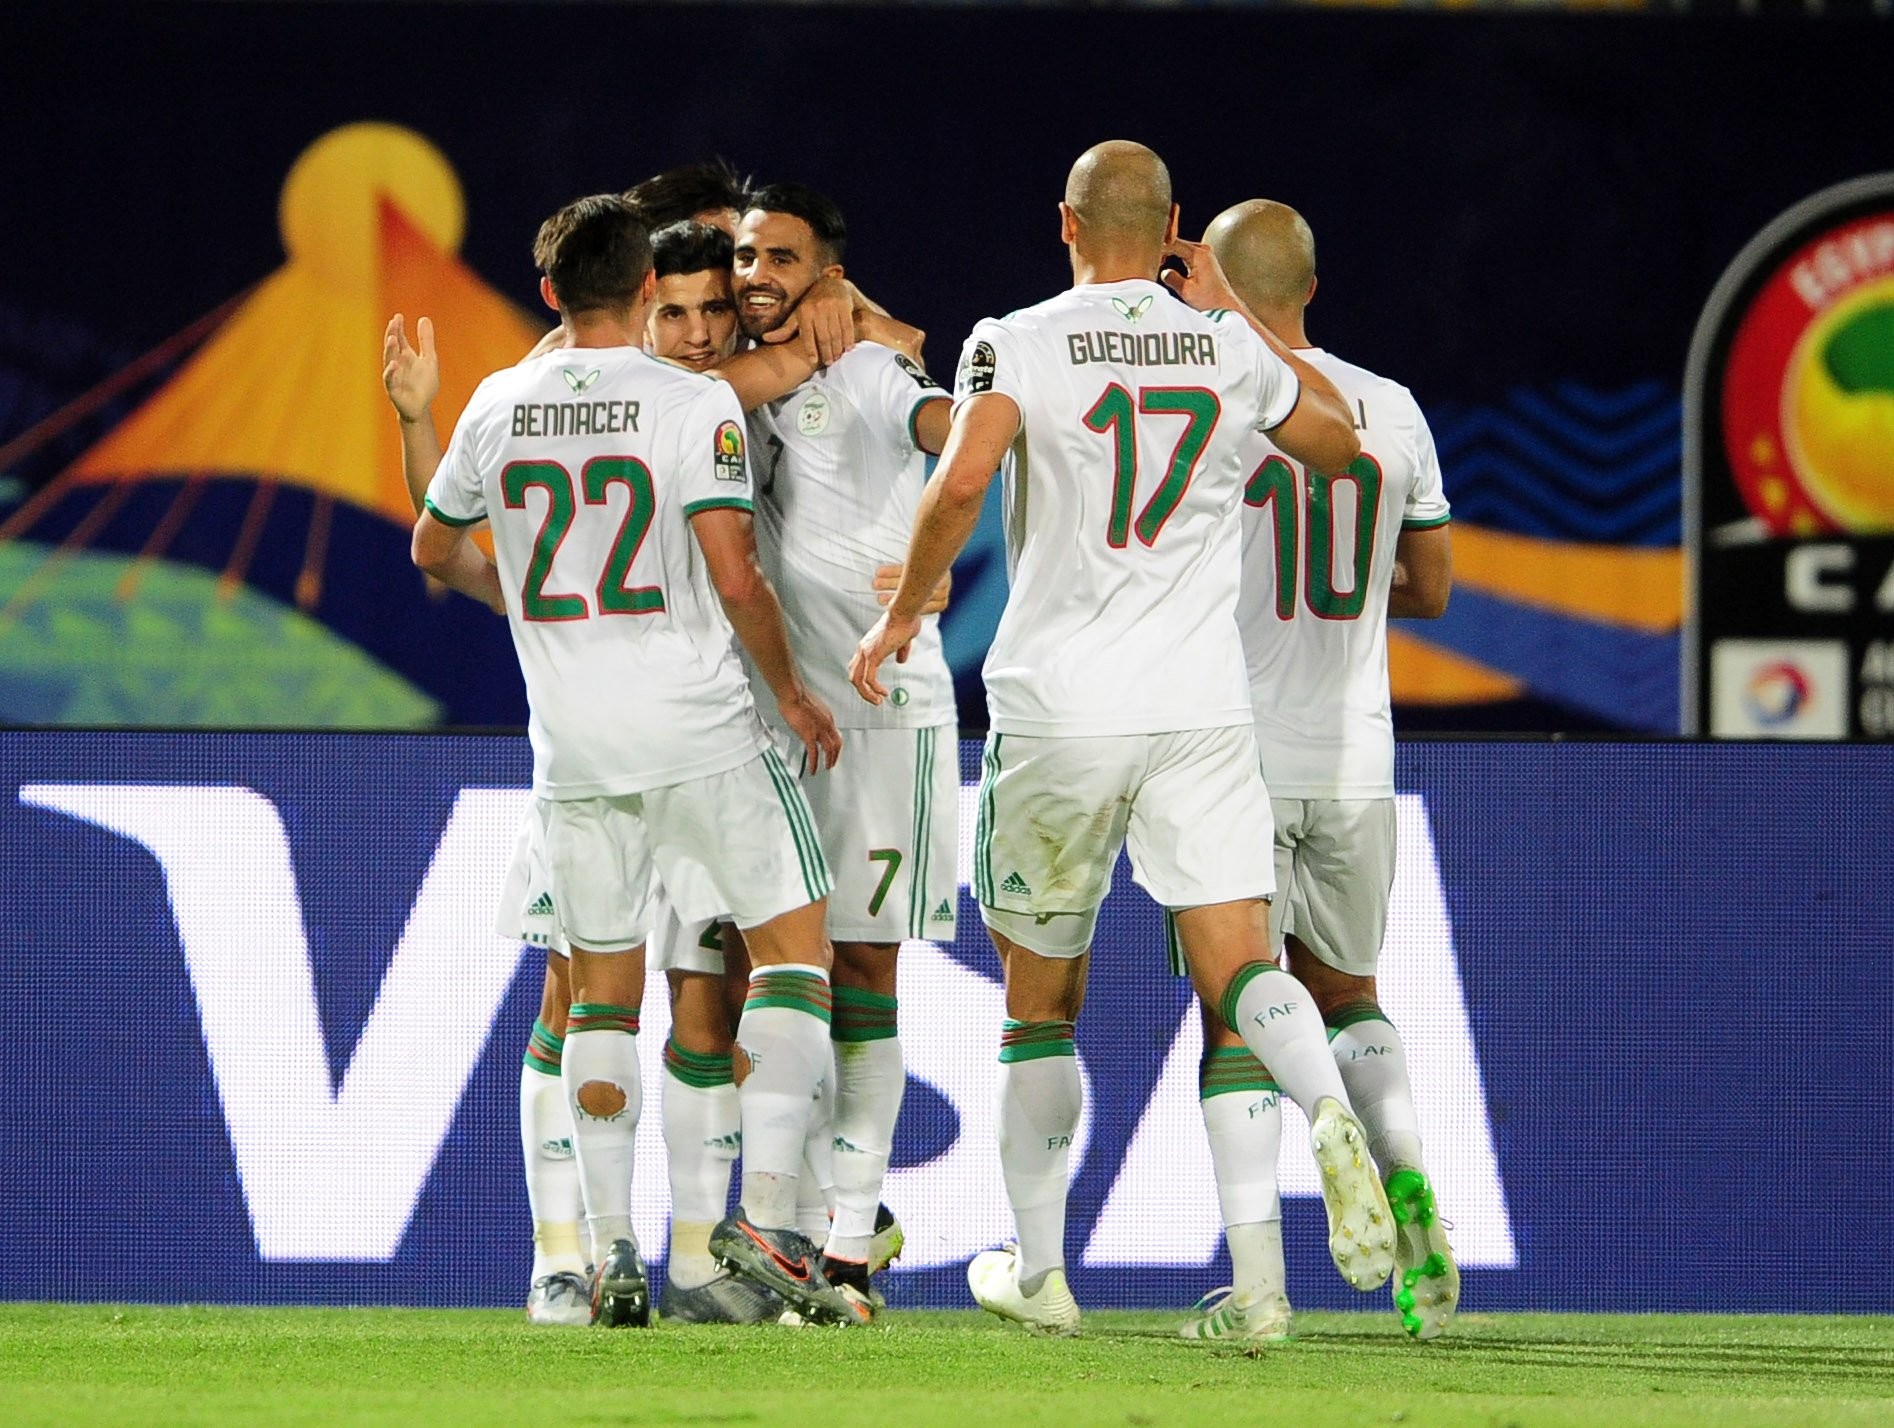 Półfinały PNA 2019 dostarczyły sporo emocji. Senegal i Algieria zagrają w finale